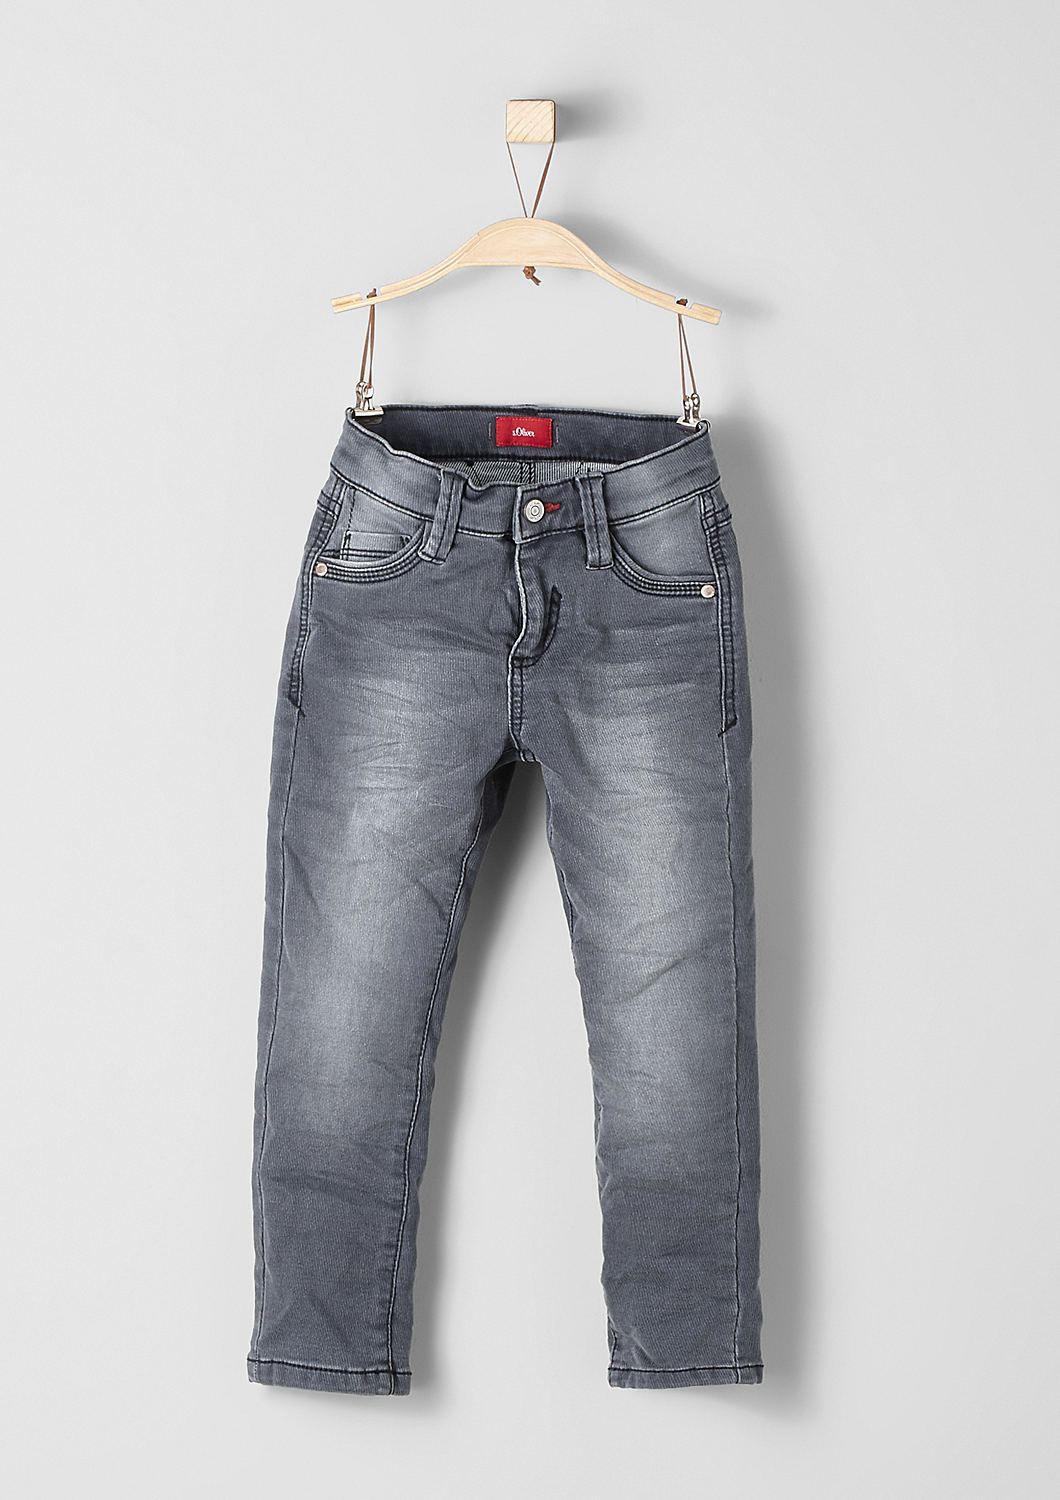 s. Oliver Junior Pelle: Jeans mit Streifenstruktur bei Schrahböck